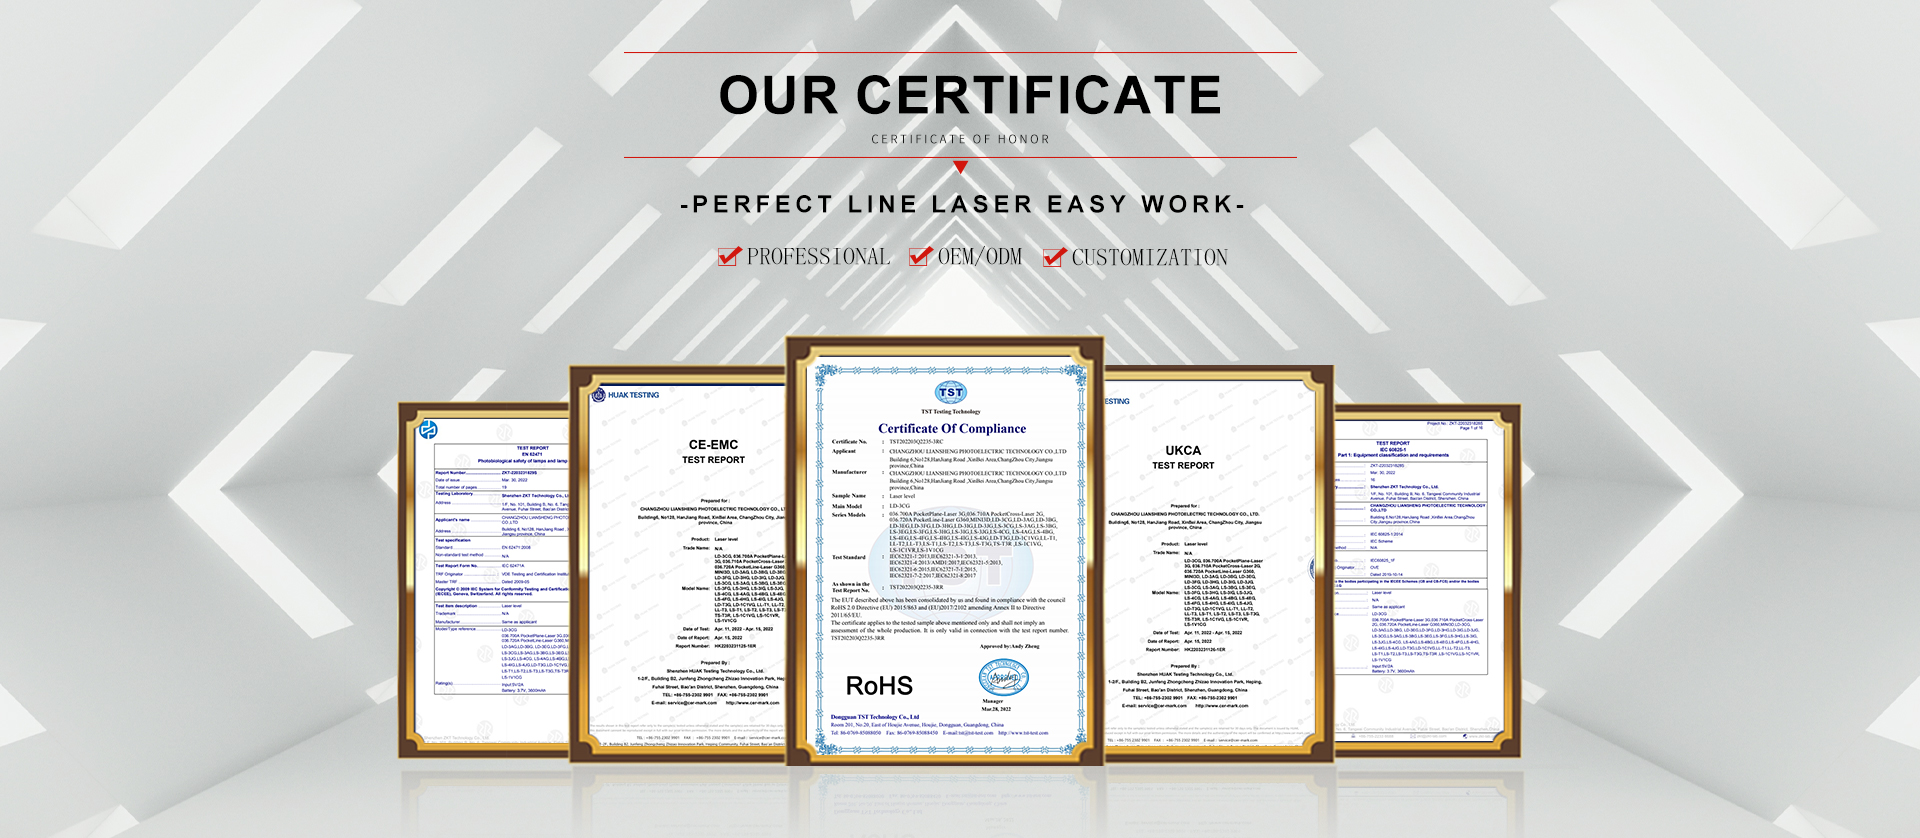 certificat de niveau laser en croix